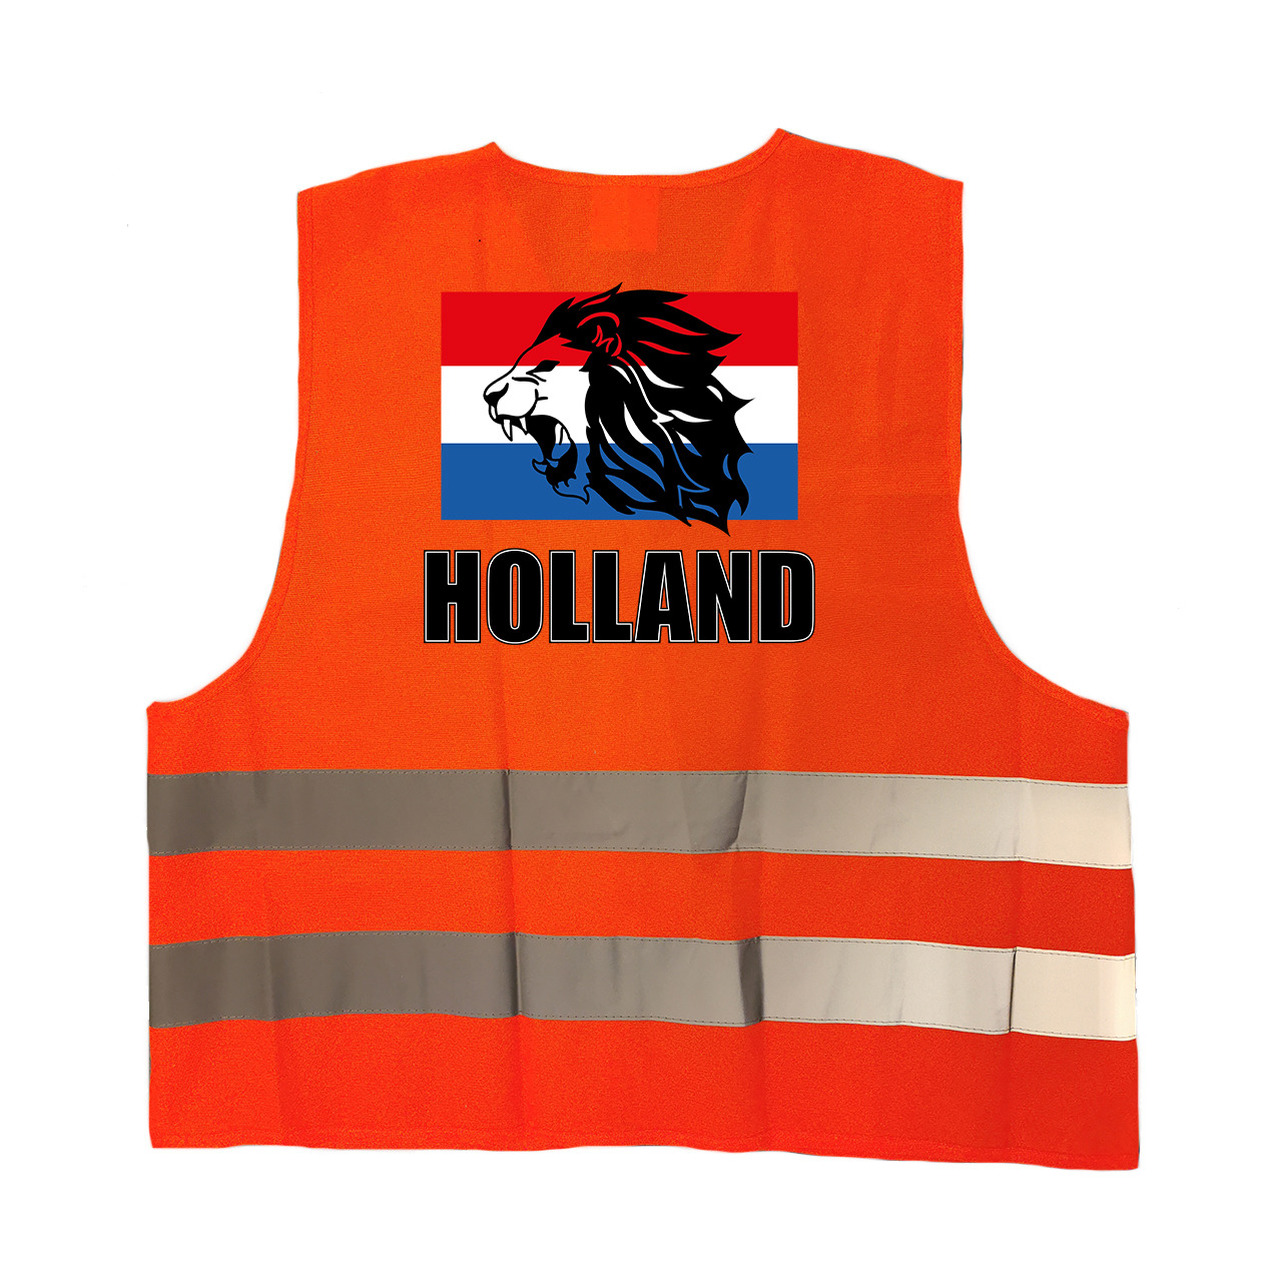 Holland vlag met leeuw oranje veiligheidshesje EK - WK supporter outfit voor volwassenen